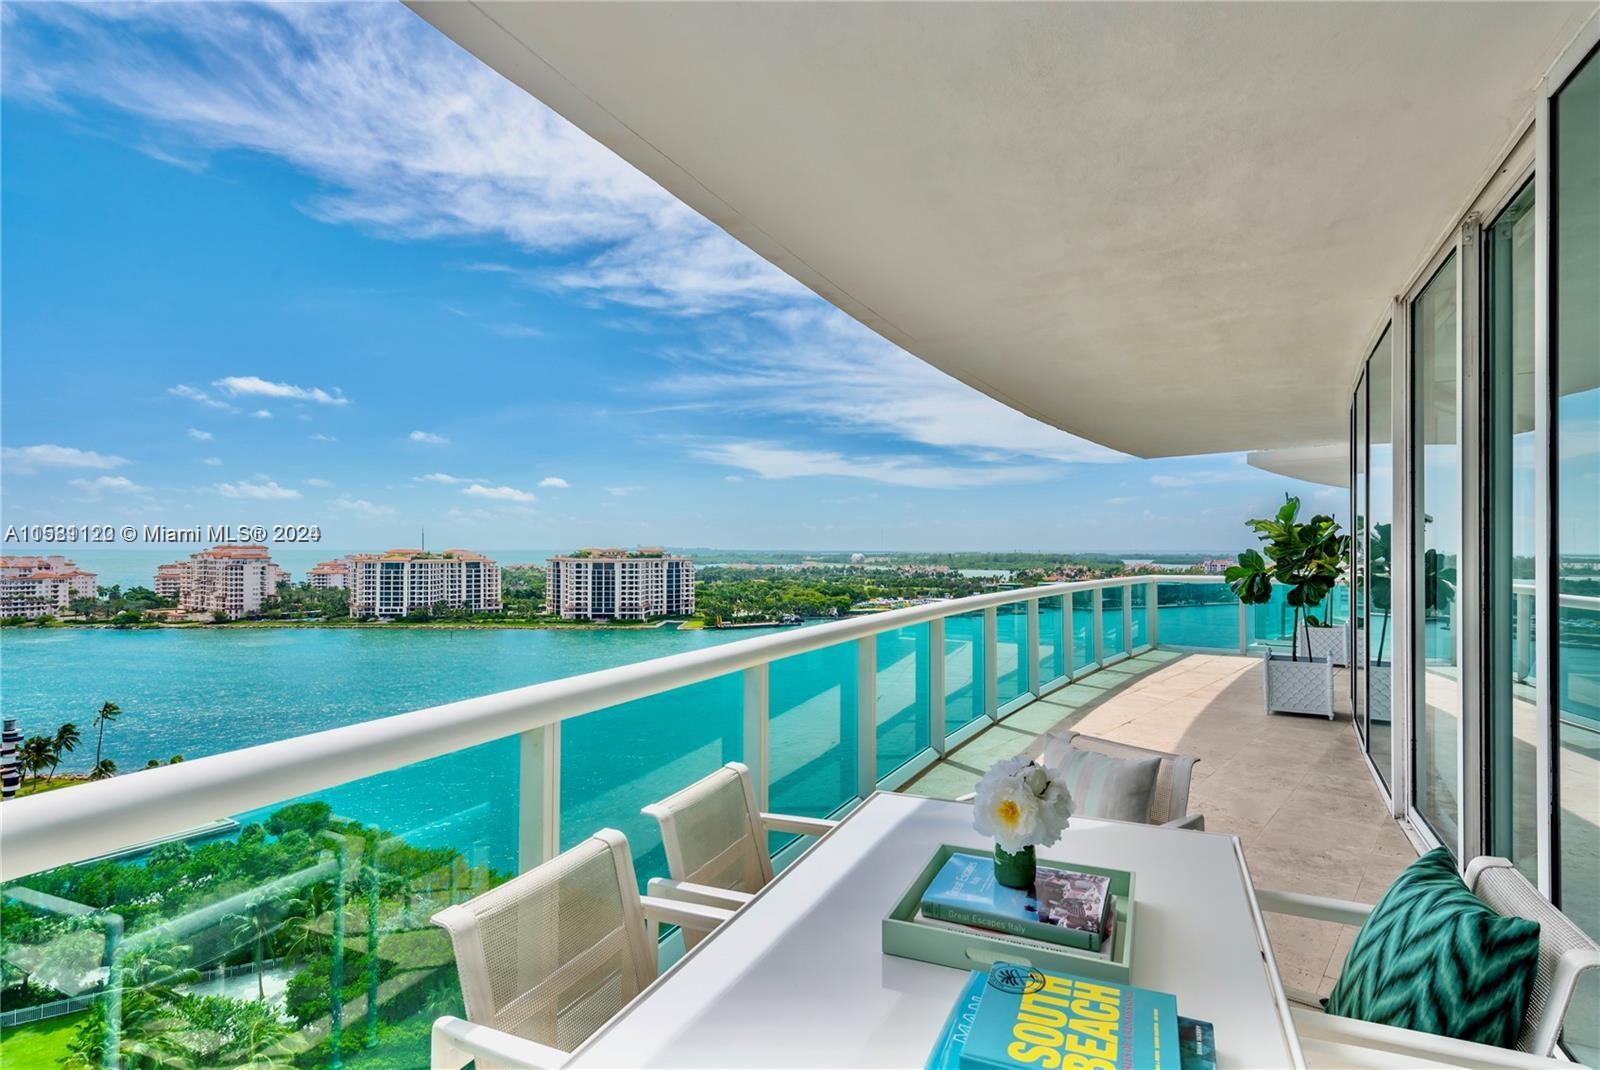 Rental Property at 1000 S Pointe Dr 1605, Miami Beach, Miami-Dade County, Florida - Bedrooms: 2 
Bathrooms: 3  - $13,000 MO.